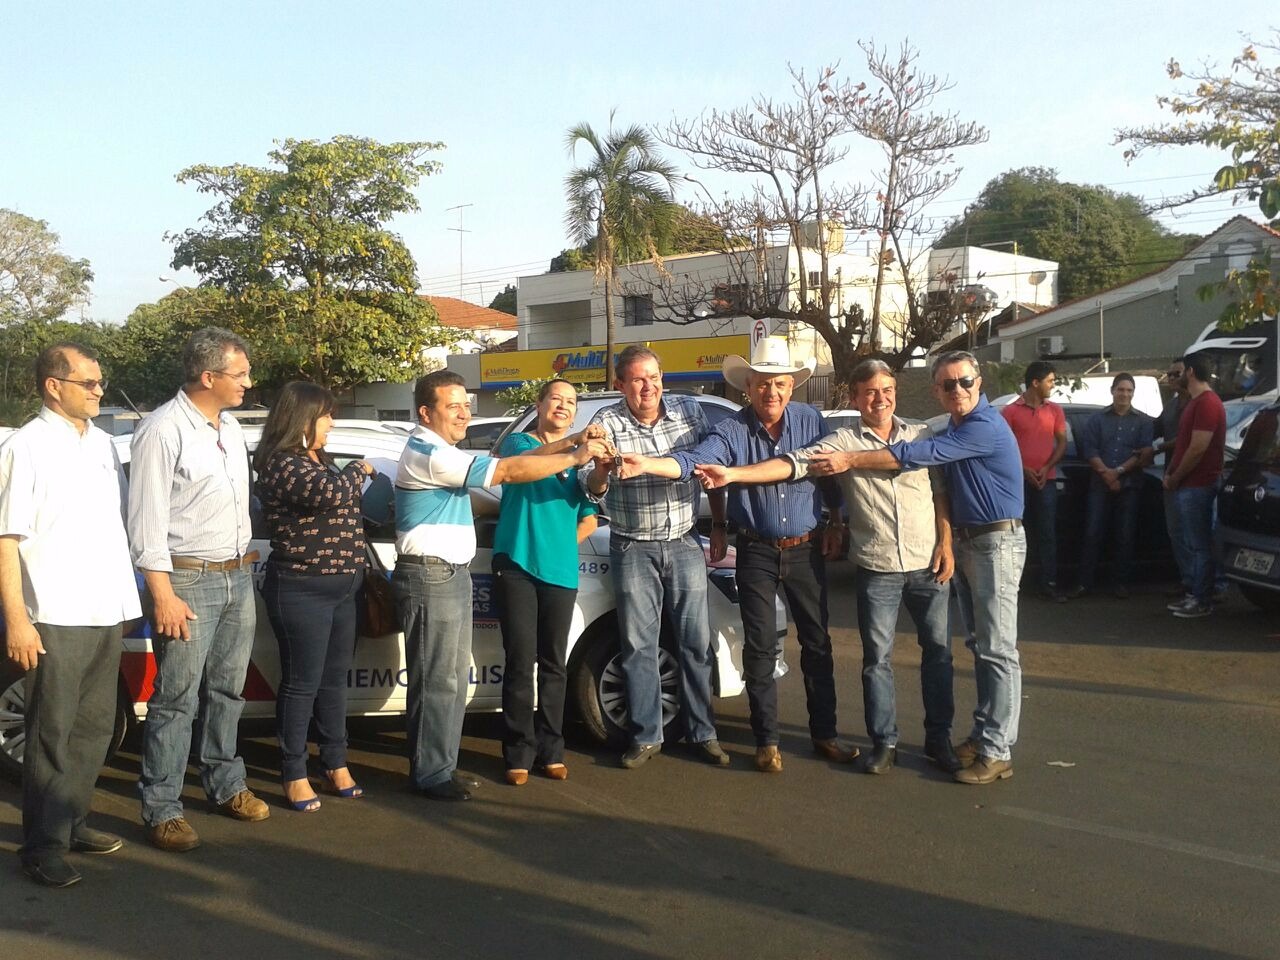 Autoridades receberam o veículo nesta sexta (11) em frente a Prefeitura de Três Lagoas. (Foto: Caçula FM)